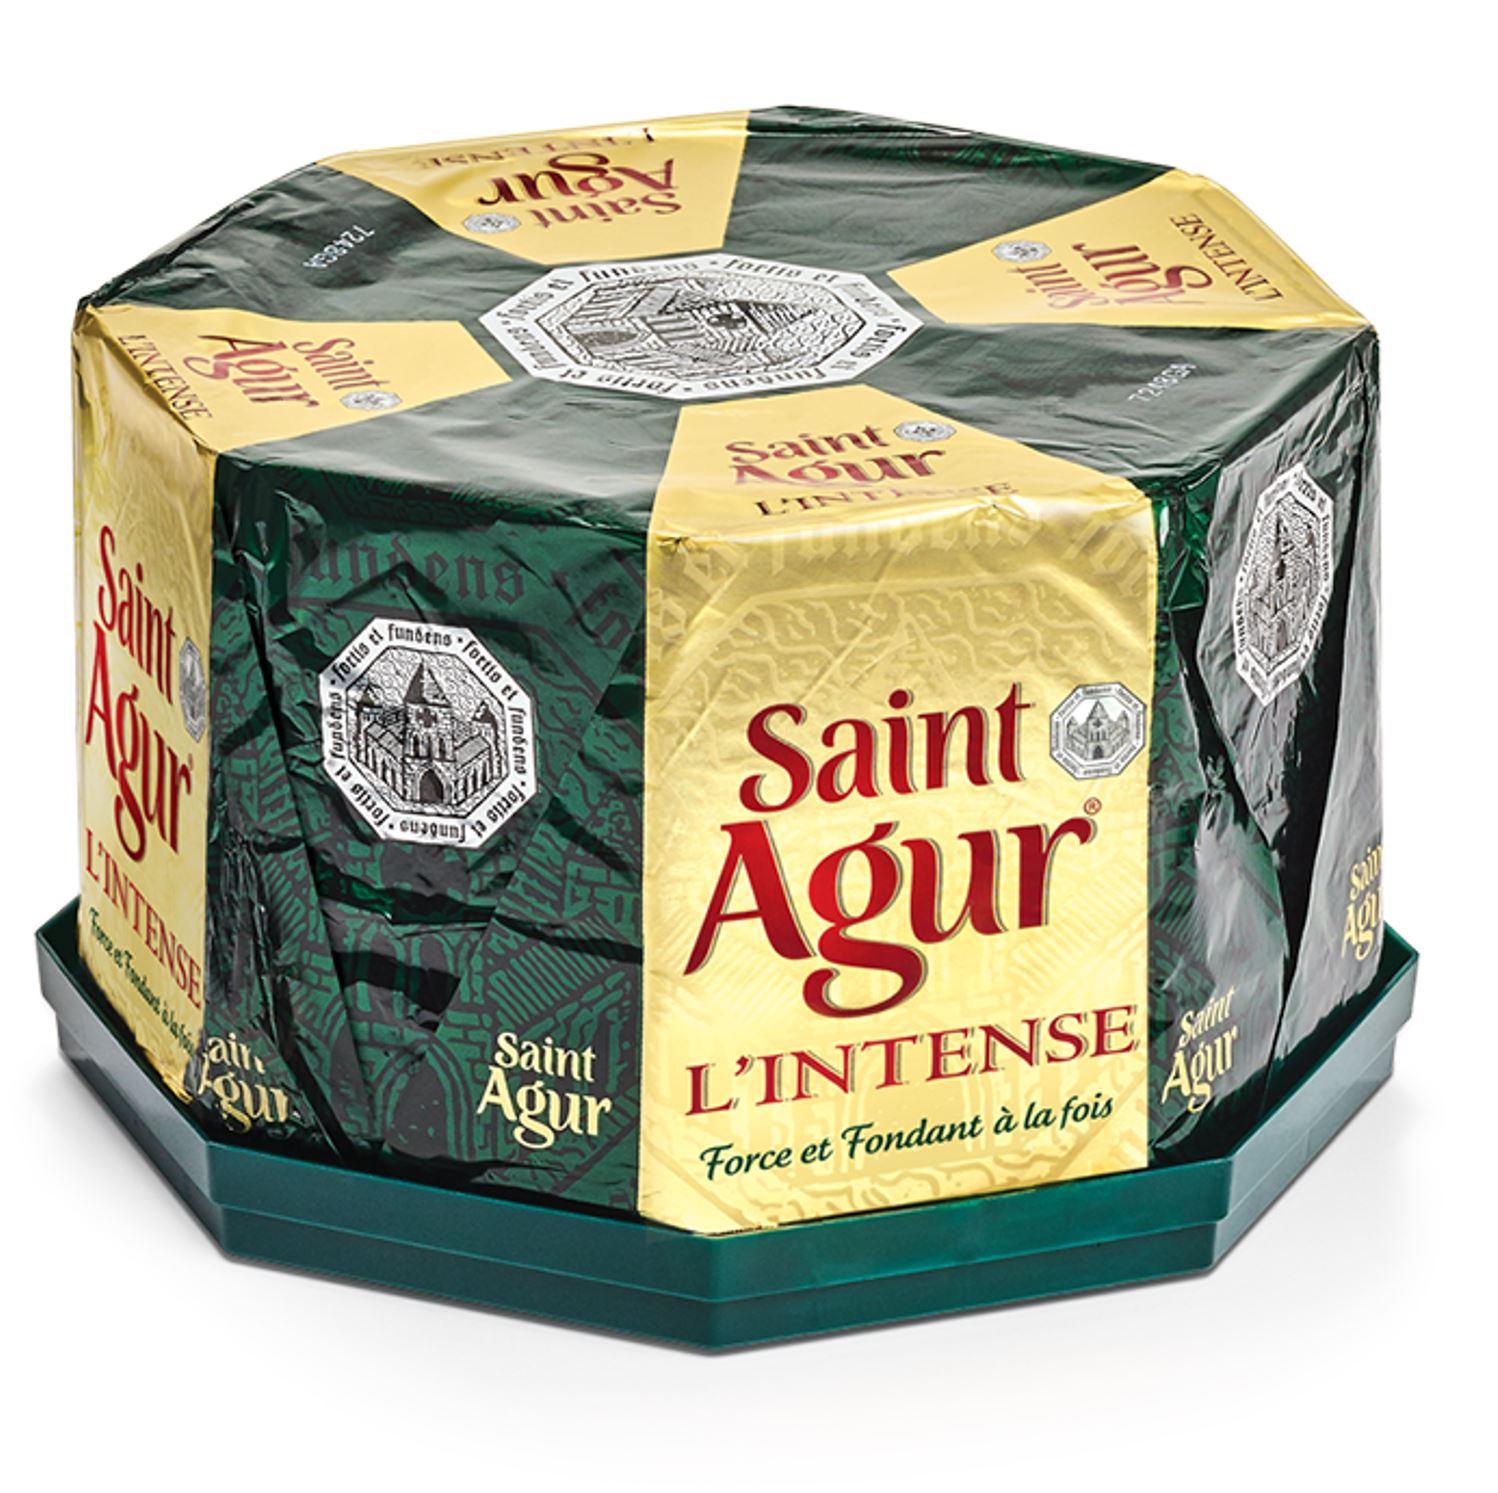 Saint agur 60% M.G